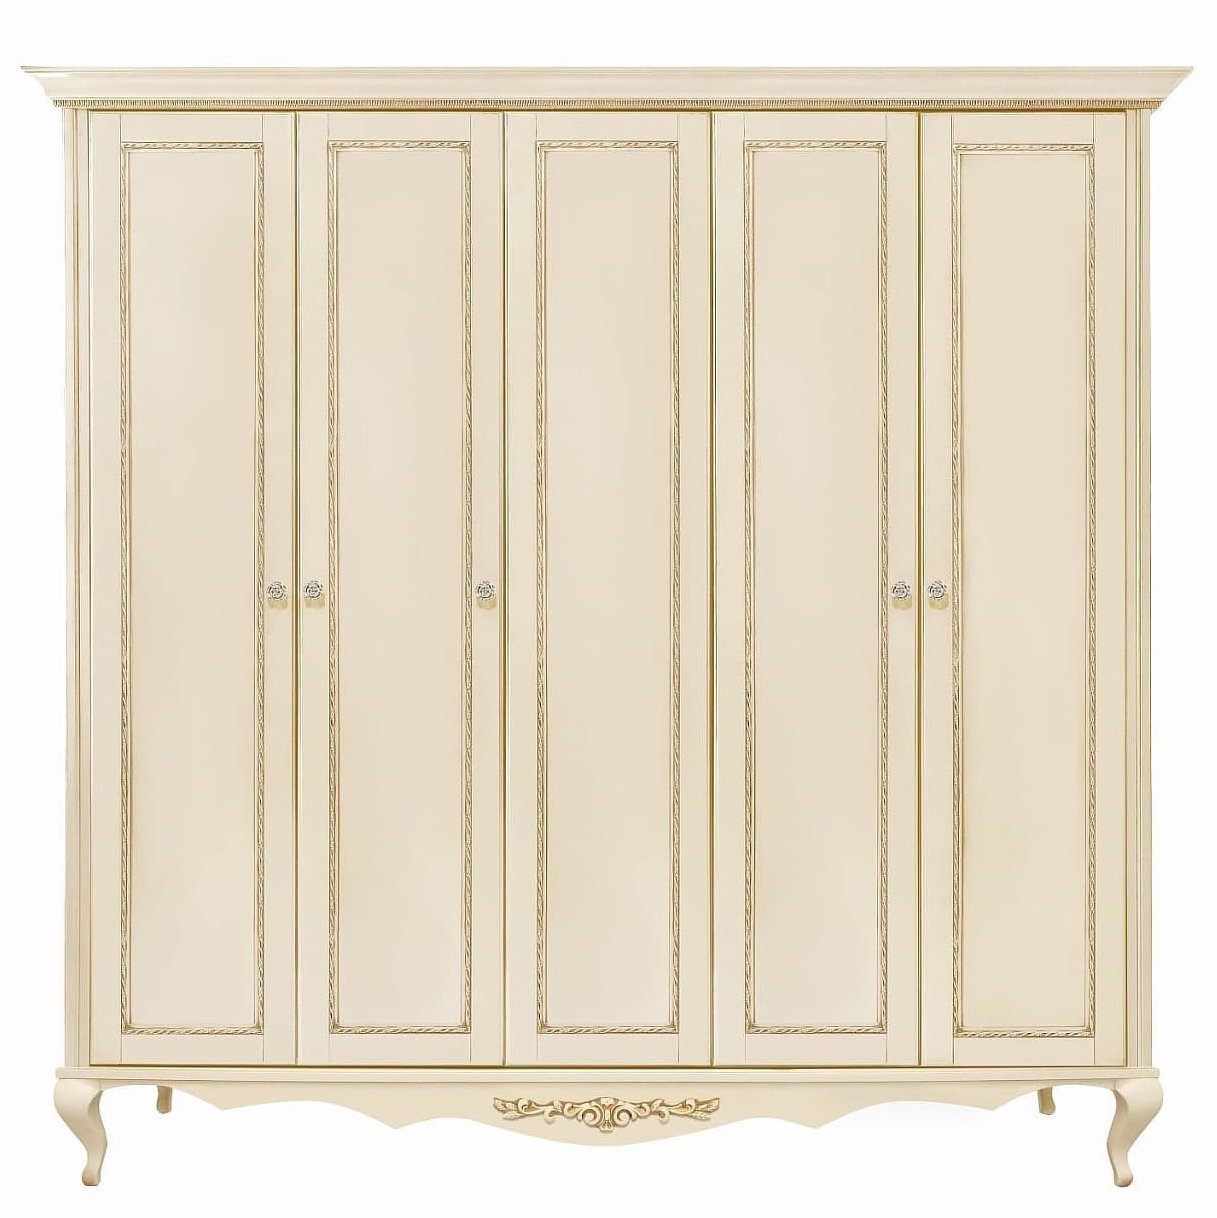 Шкаф платяной Timber Неаполь, 5-ти дверный 249x65x227 см цвет: ваниль с золотом (T-525Д)T-525Д